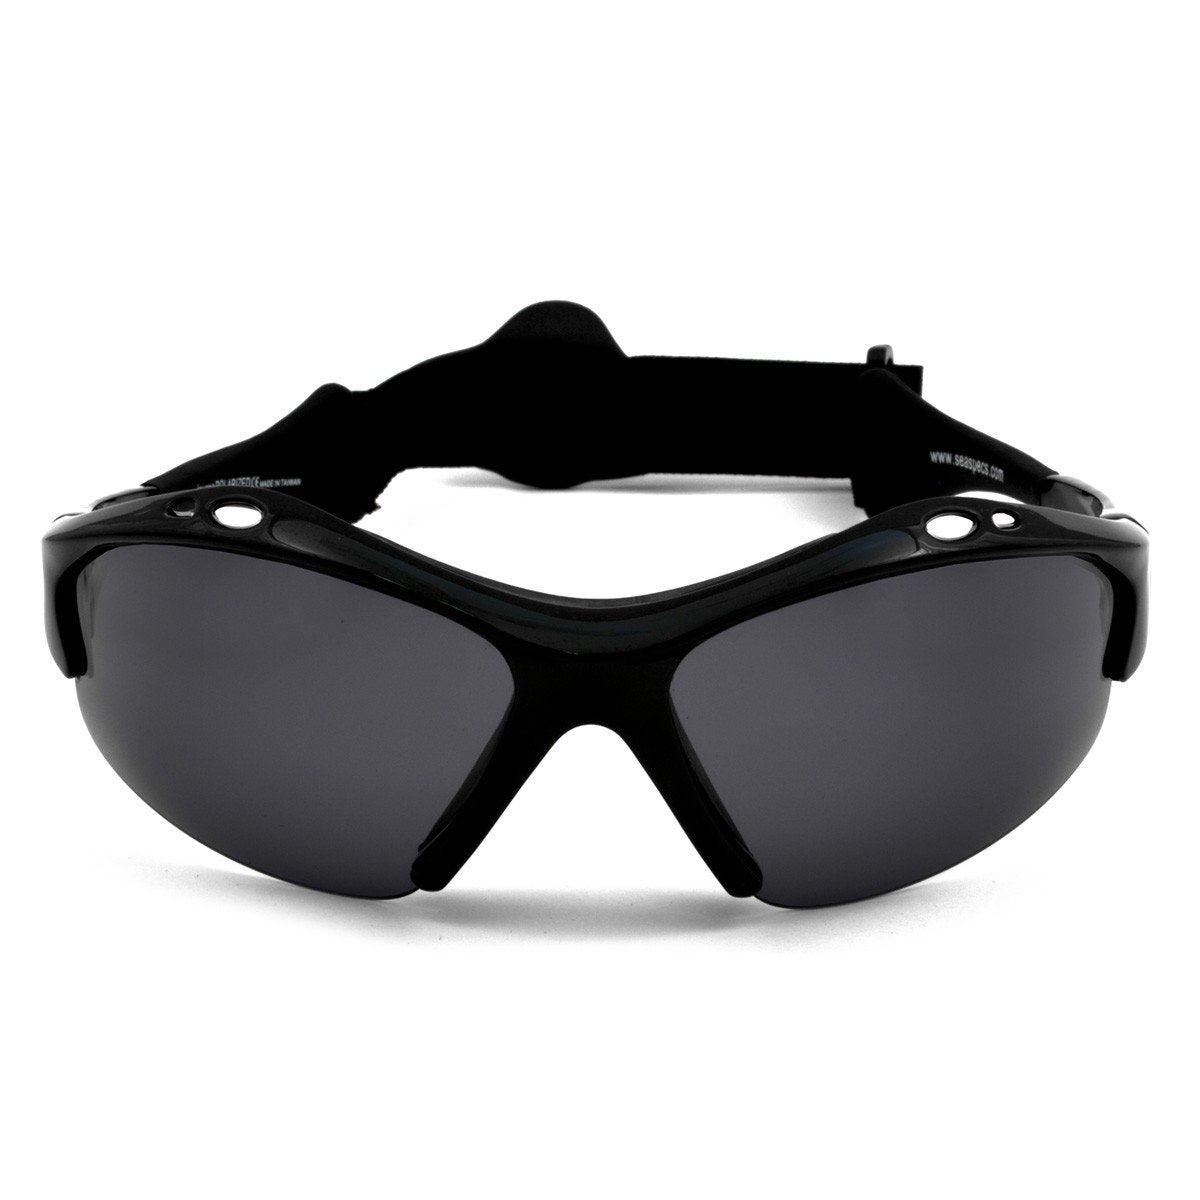 SeaSpecs Iguana Sunglasses, Black